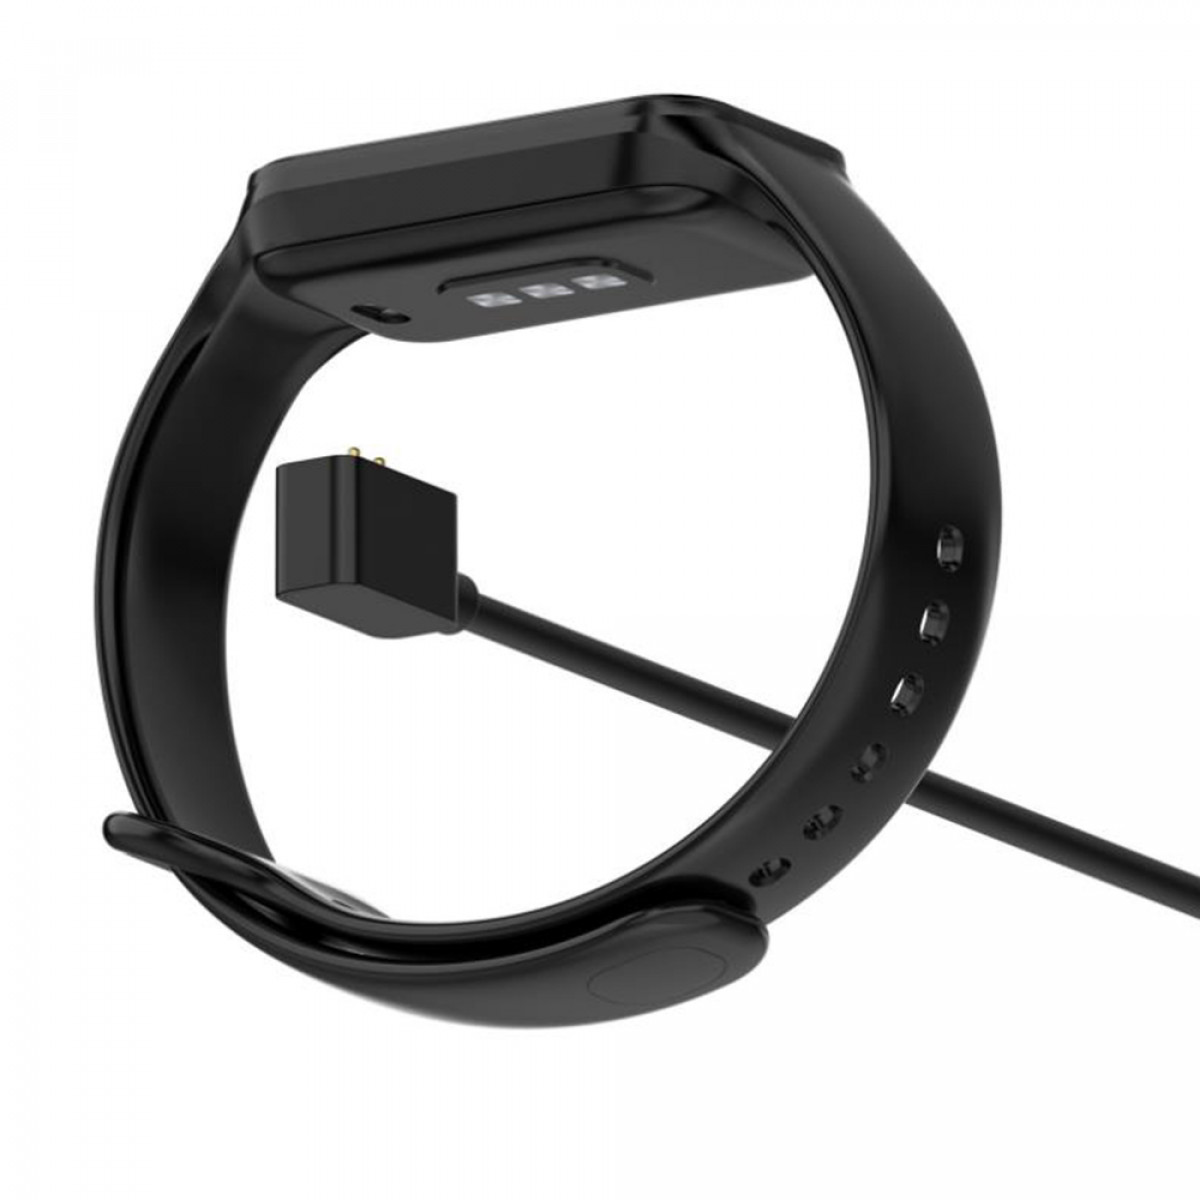 / Schwarz INF 8 für Redmi 2, USB-Smartwatch-Ladegerät Band Mi Ladestation, Band